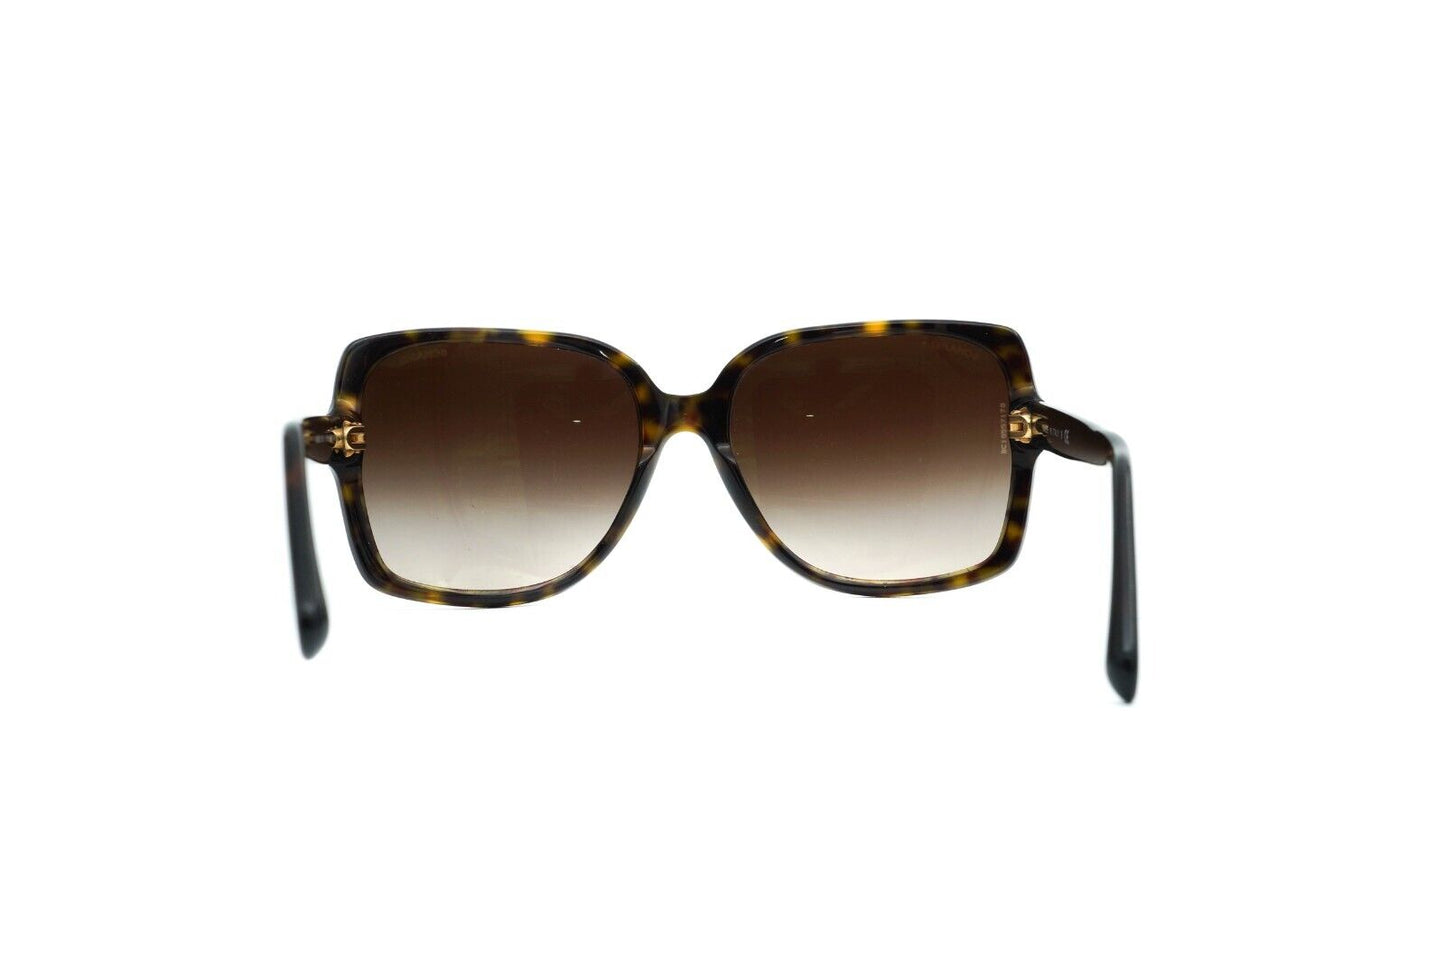 CHANEL 5267 714/s5 Sunglasses Brown Rare